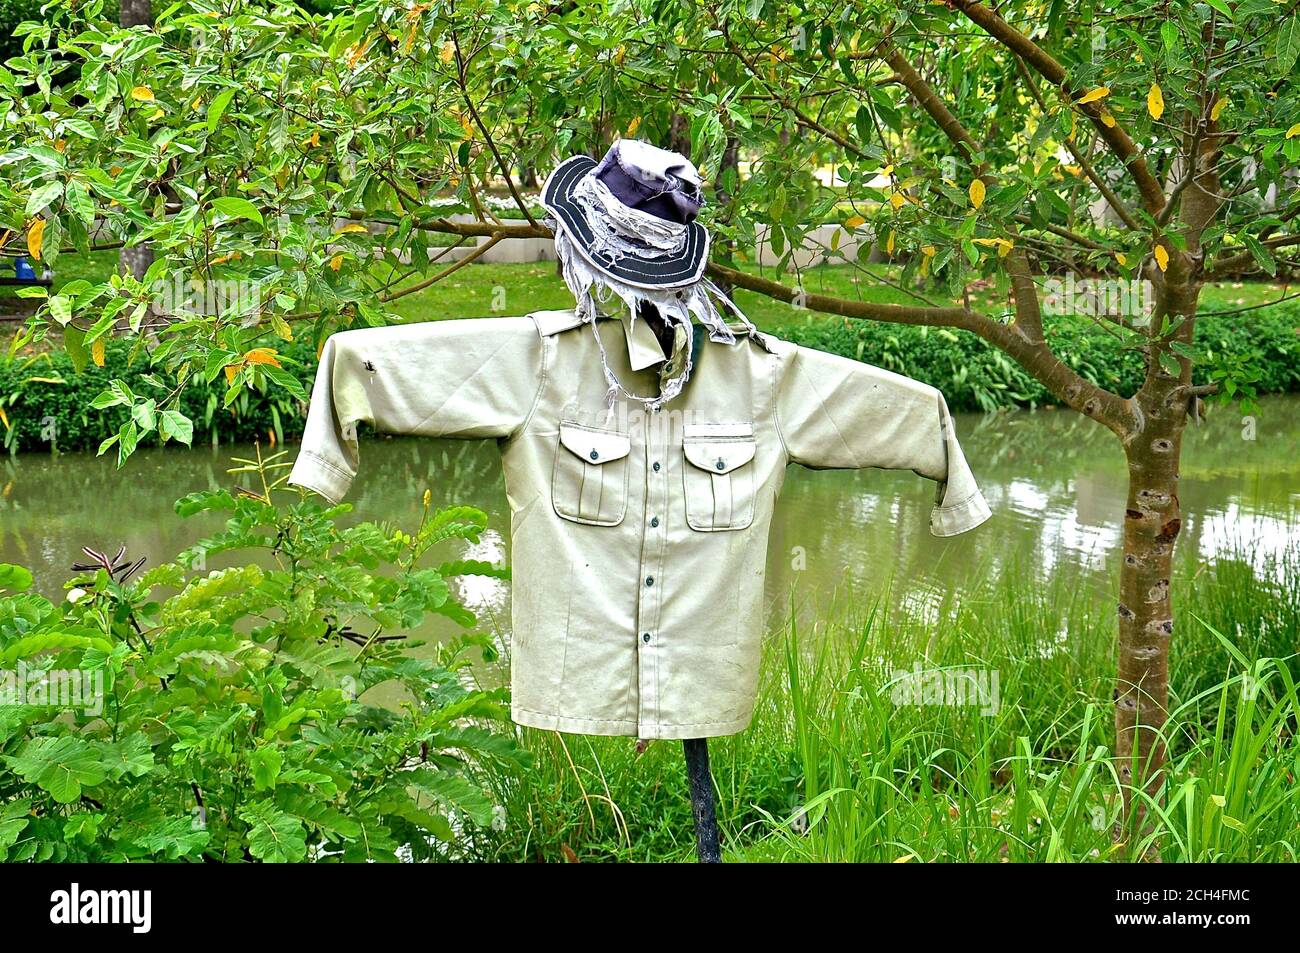 Un espantapájaros para asustar a las aves, hecho con una camisa y un sombrero, entre un fondo de vegetación verde exuberante. Foto de stock